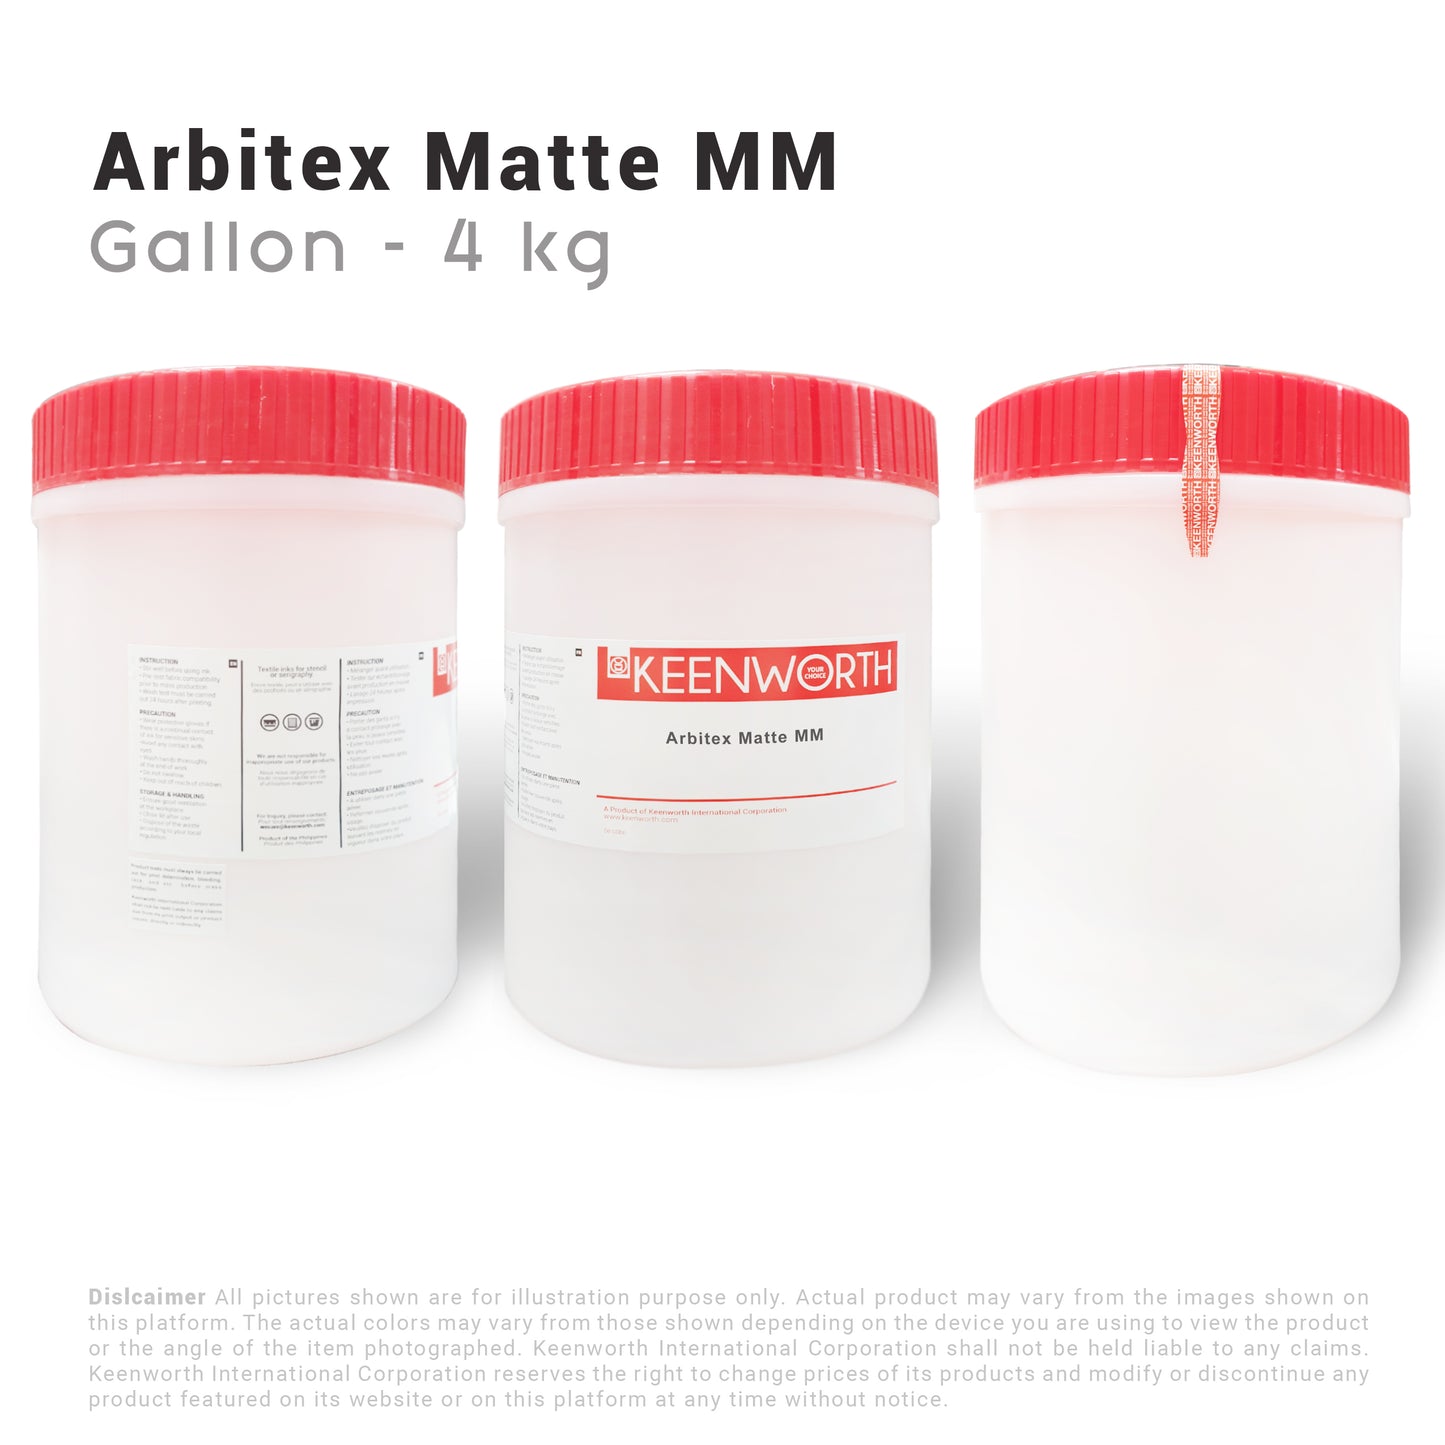 Arbitex Mat MM